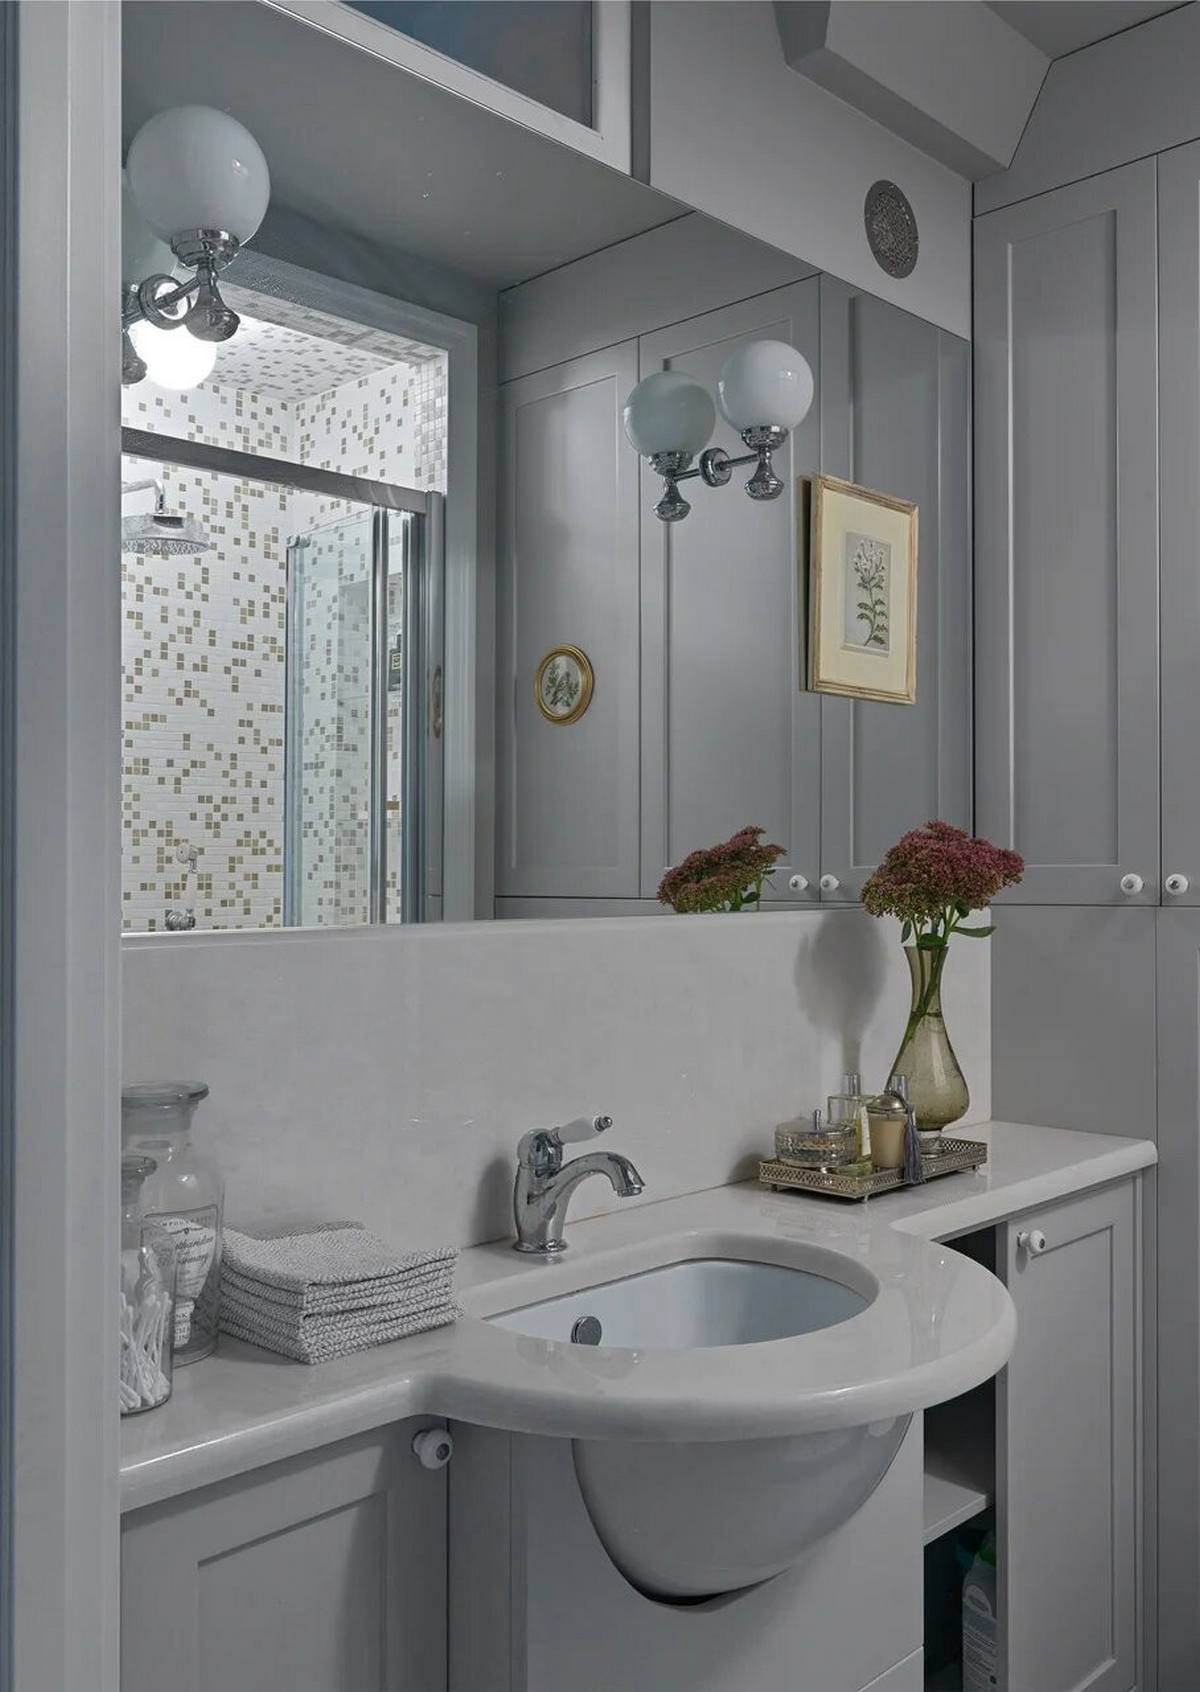 Phòng tắm cũng là khu vực thay đổi rõ nét sau cải tạo, cụ thể, bồn tắm nằm được thay bằng buồng tắm vòi sen để tiết kiệm diện tích. Tấm gương lớn ốp tường giúp 'nhân đôi' không gian và ánh sáng.